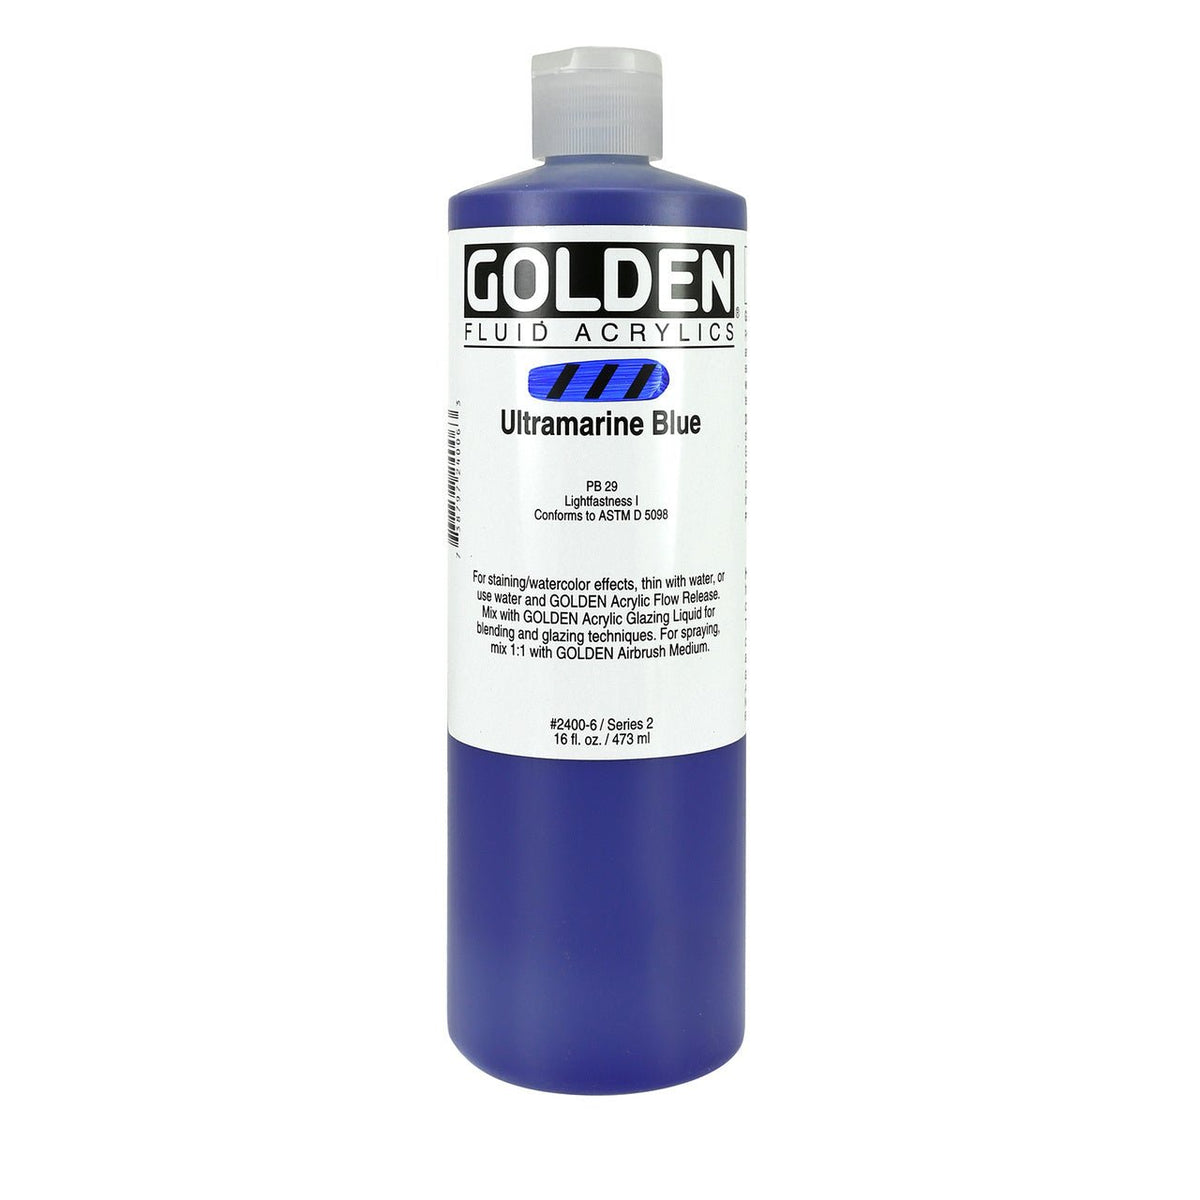 Golden Fluid Acrylic Ultramarine Blue 16 oz - merriartist.com